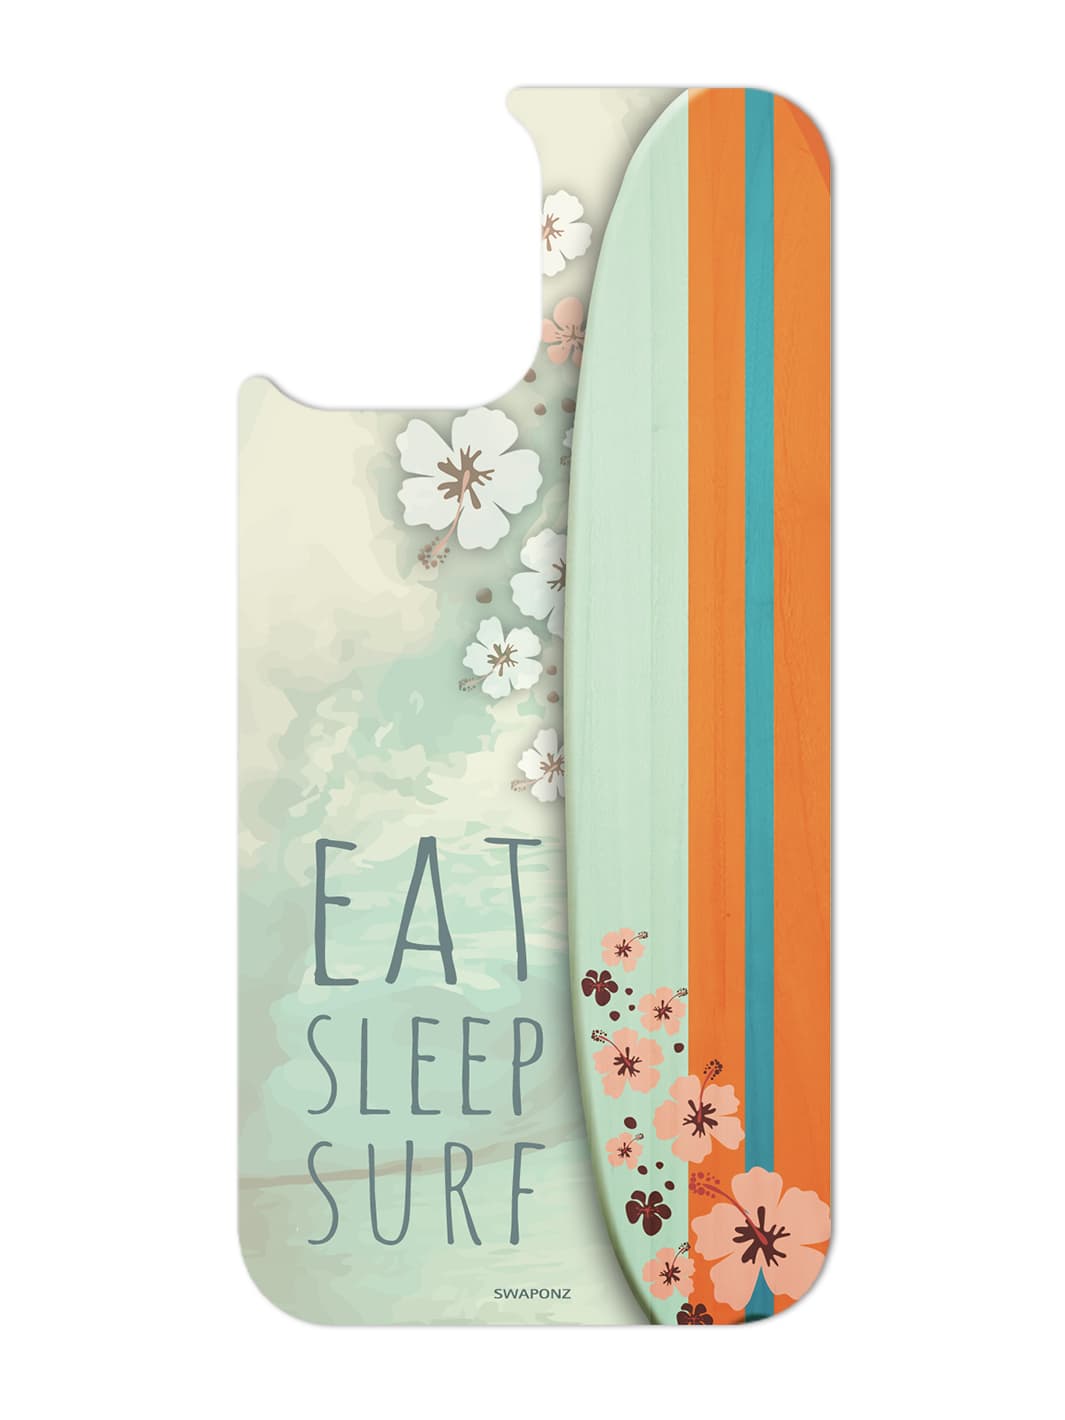 Swap - Eat Sleep Surf 1